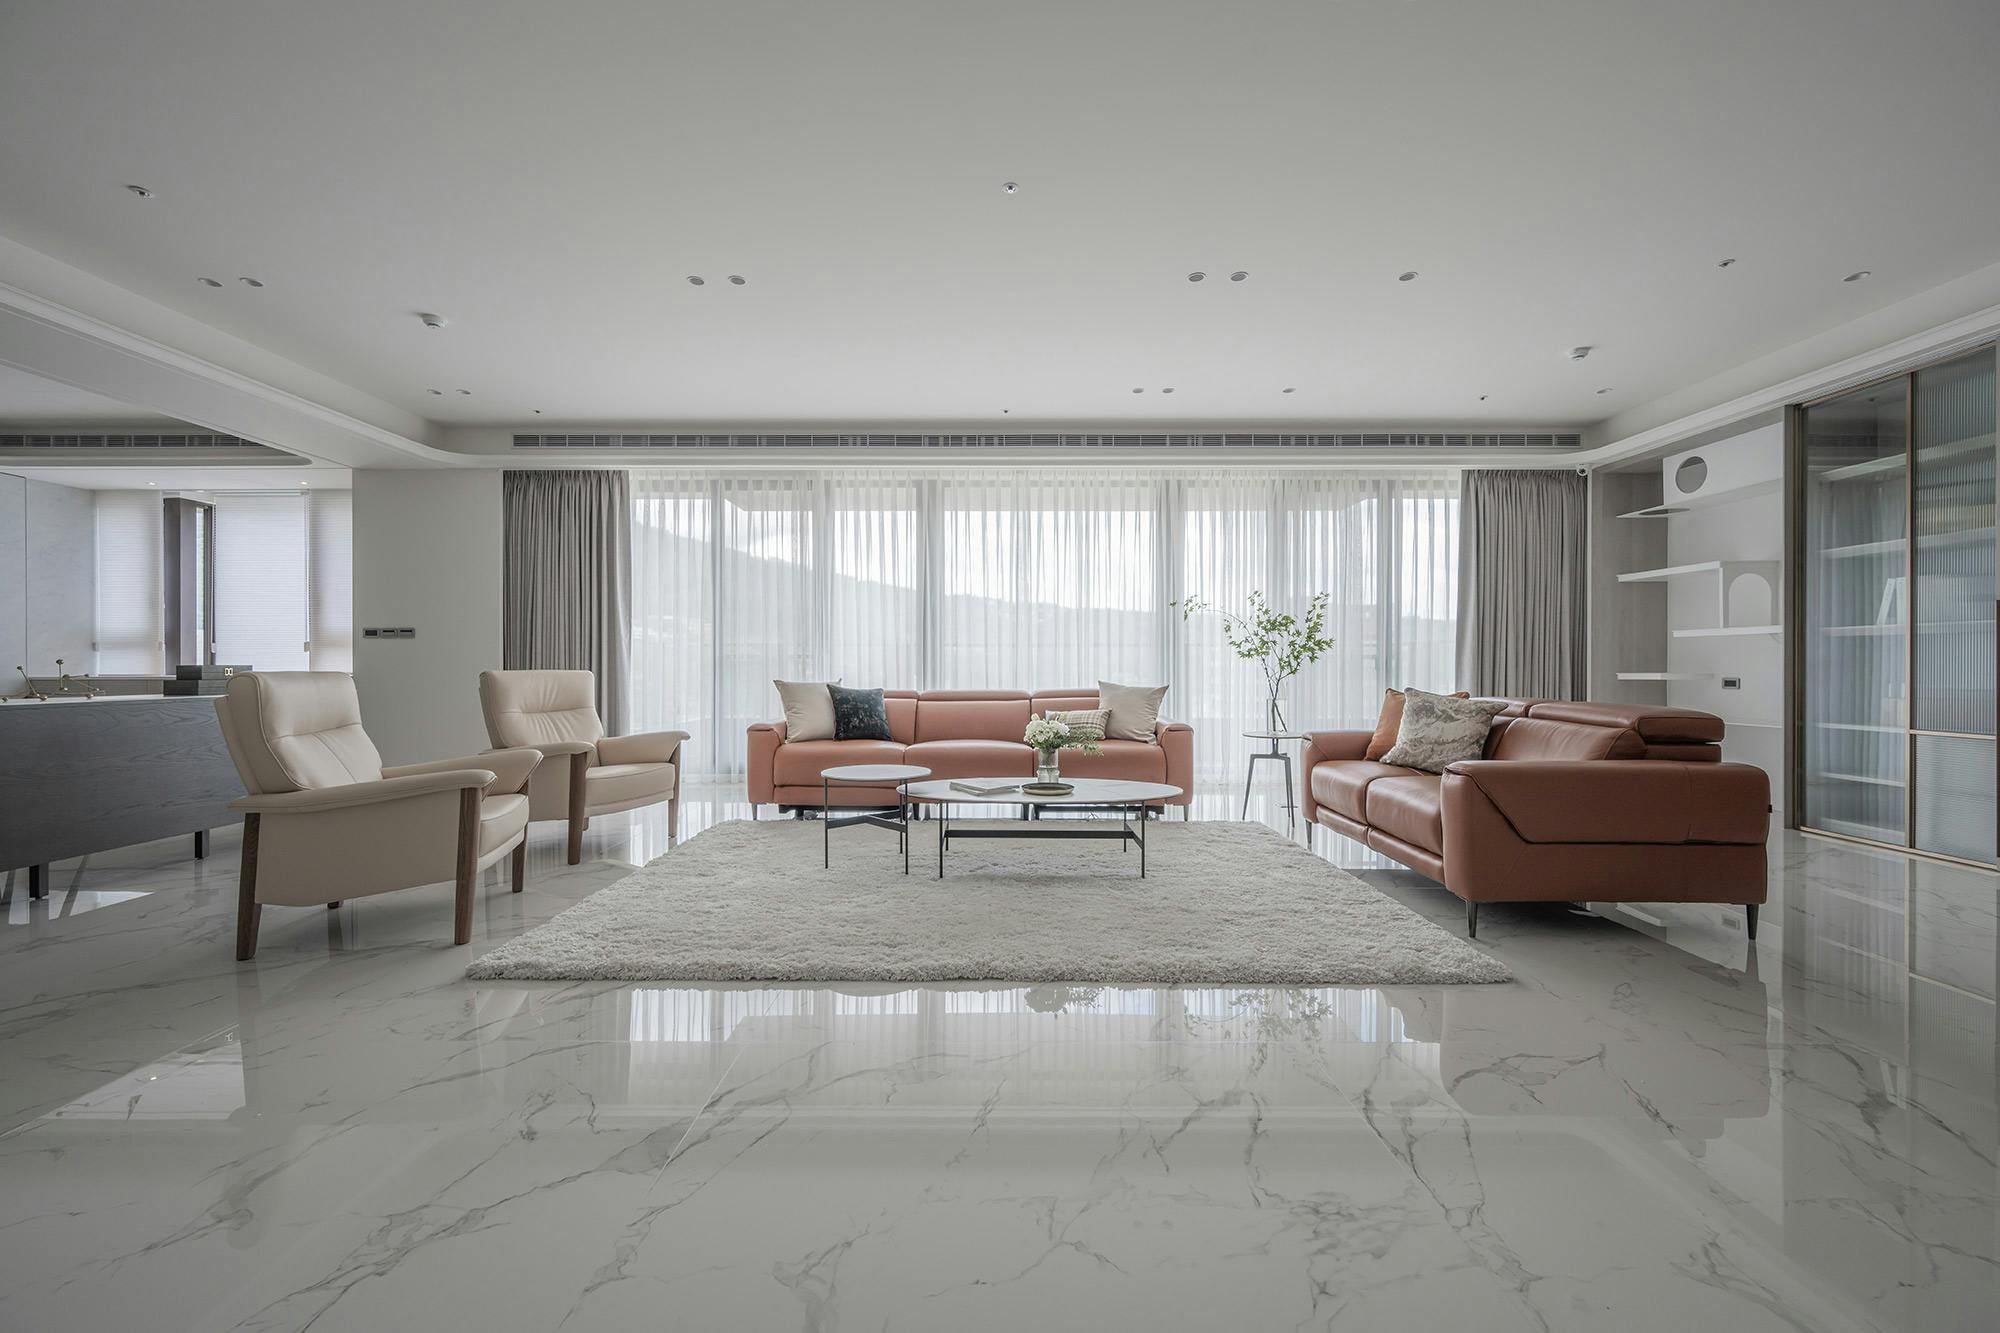 Numero immagine 41 della sezione corrente di DKTN Helena brings beauty and sustainability to a relaxed luxury flat in Singapore’s most exclusive area di Cosentino Italia